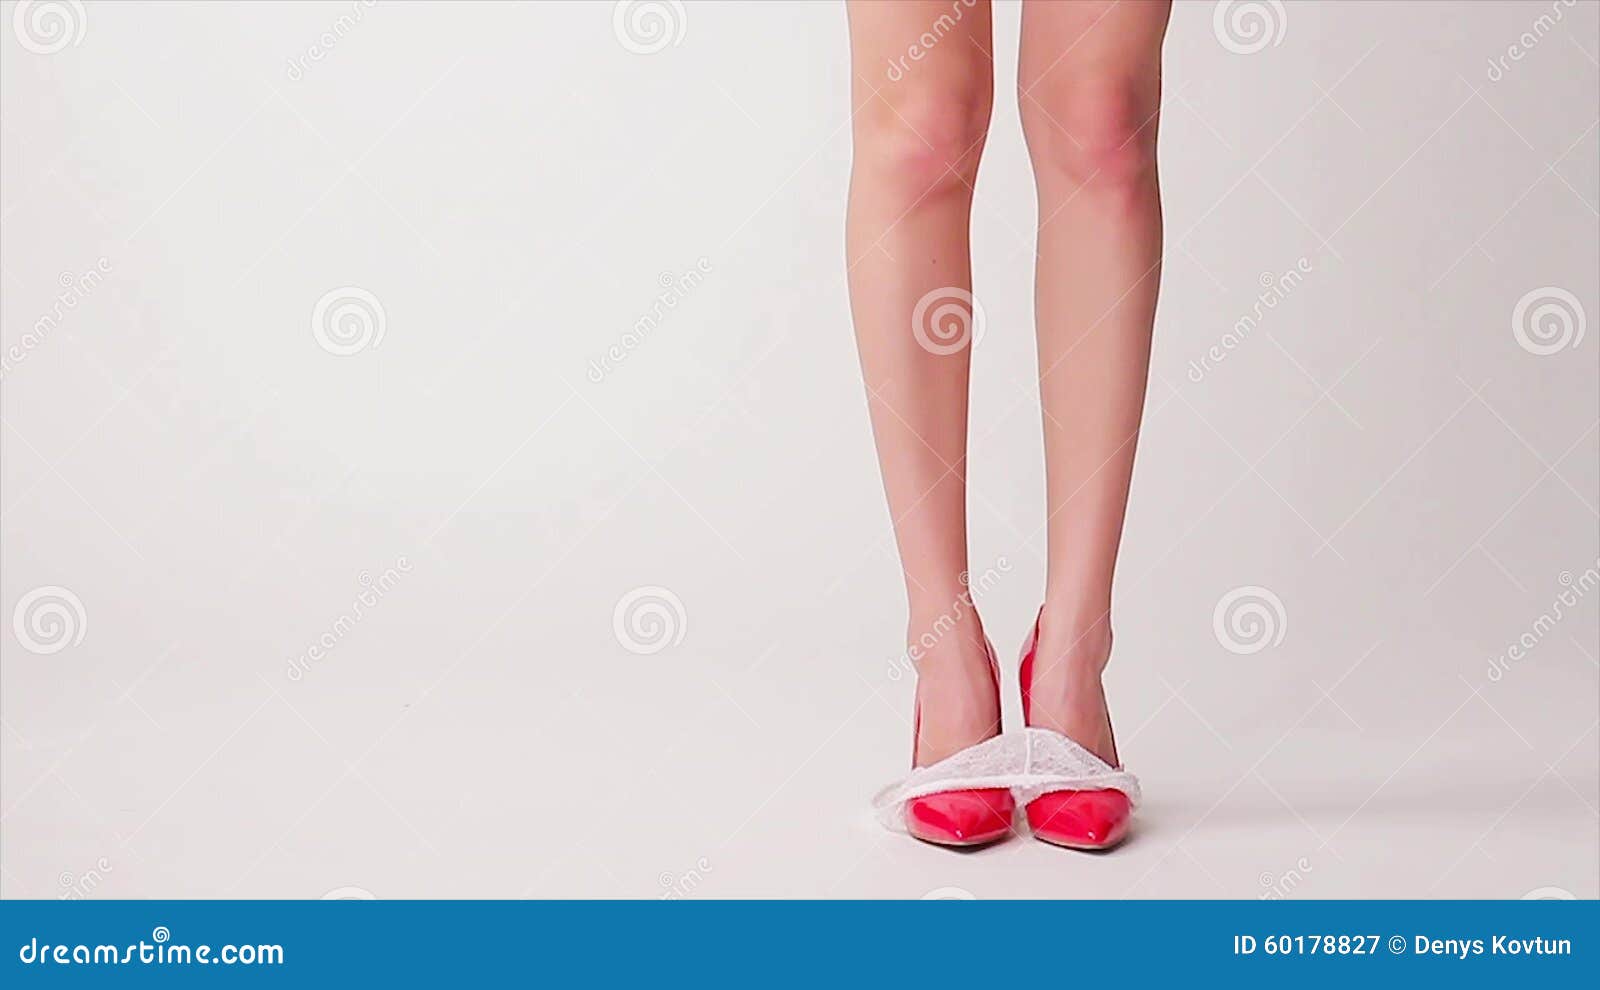 厂家直销 蕾丝三角裤 透明性感女士内裤 低腰女情趣内裤电商热销-阿里巴巴